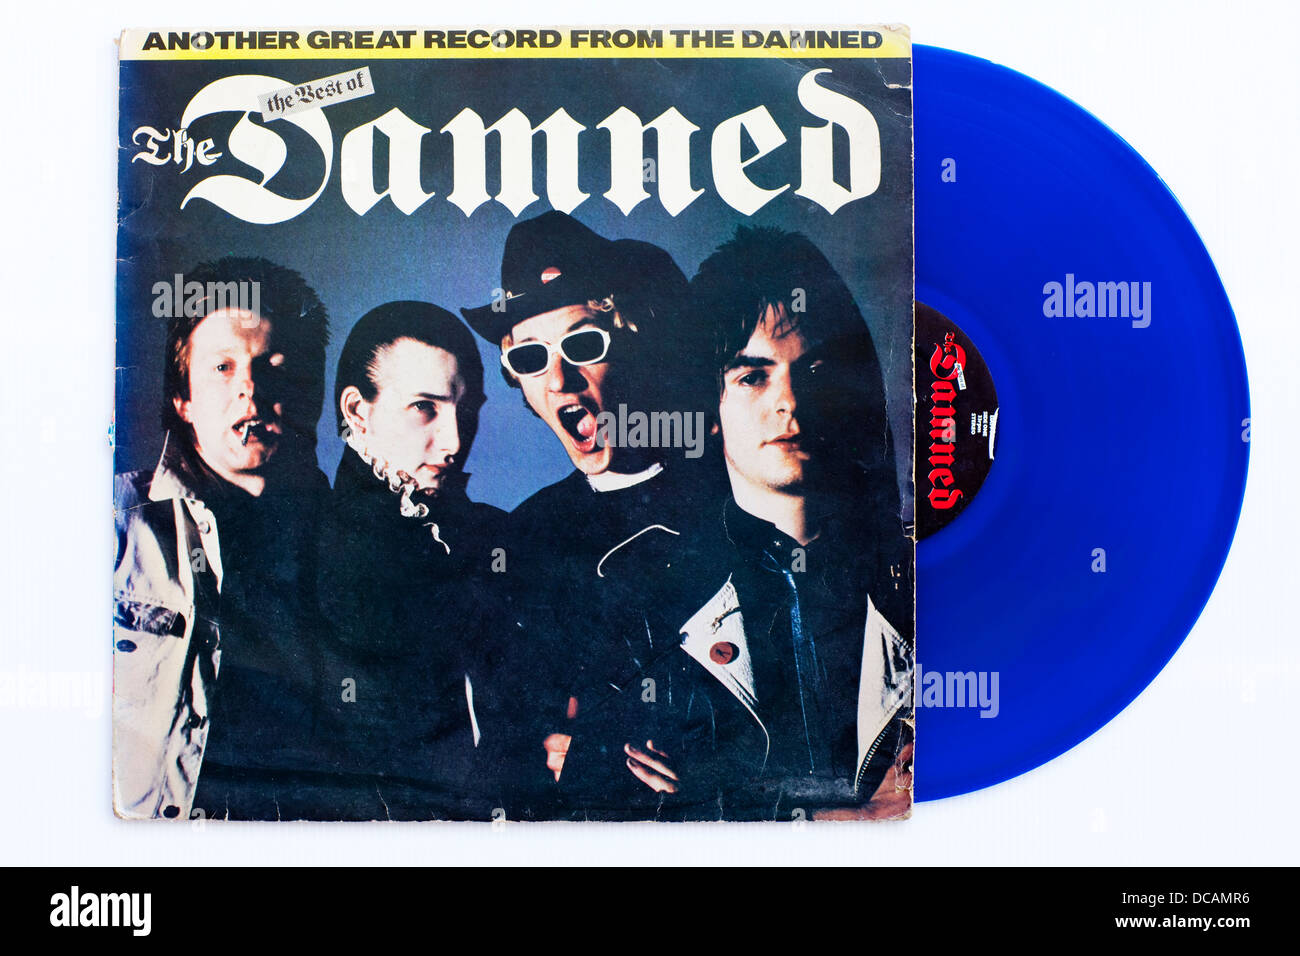 The Damned - The Best of The Damned, 1980 limitiertes blaues Vinyl-Album auf Stiff Records - nur zur redaktionellen Verwendung Stockfoto